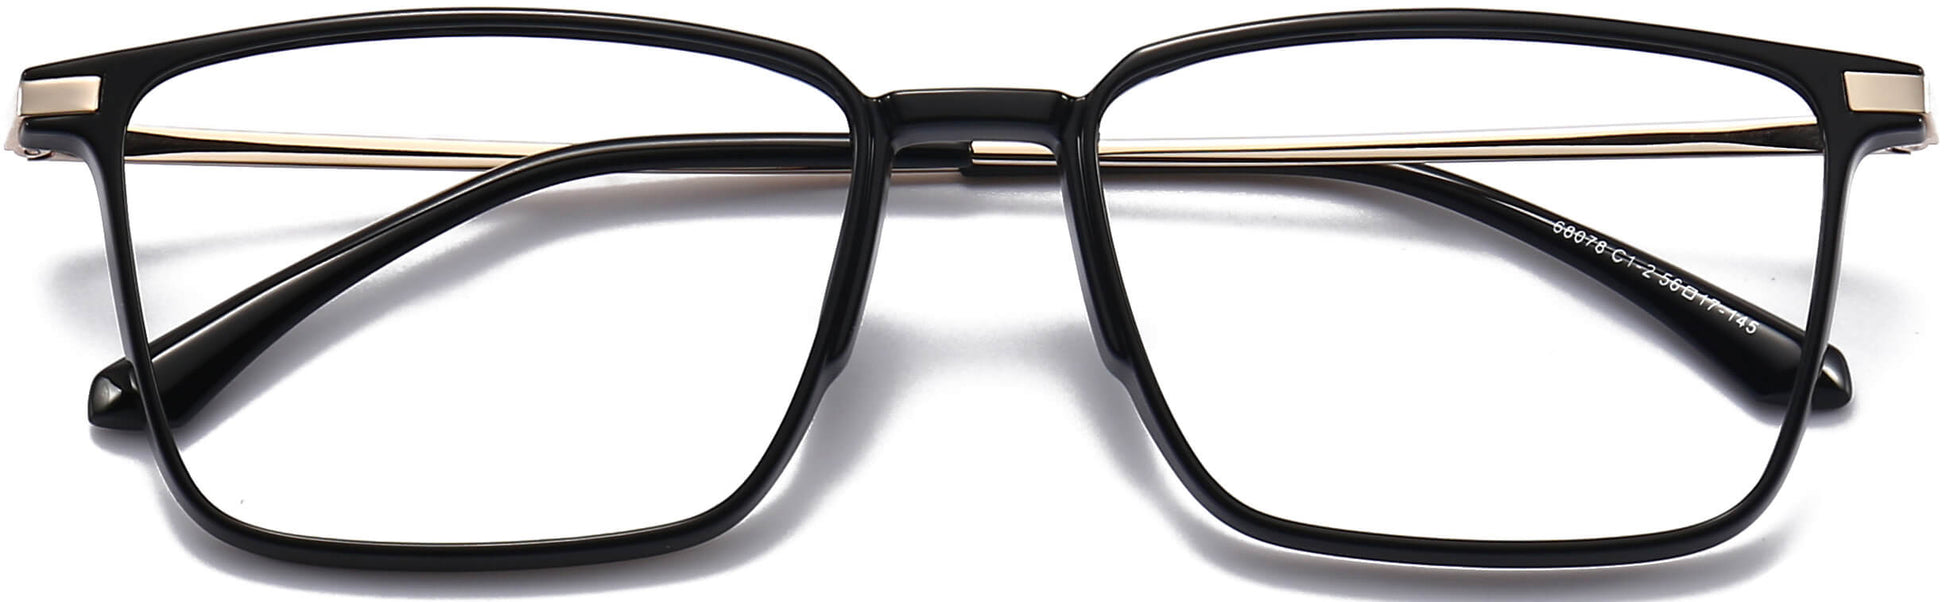 Trey Square Black Eyeglasses rom ANRRI, closed view